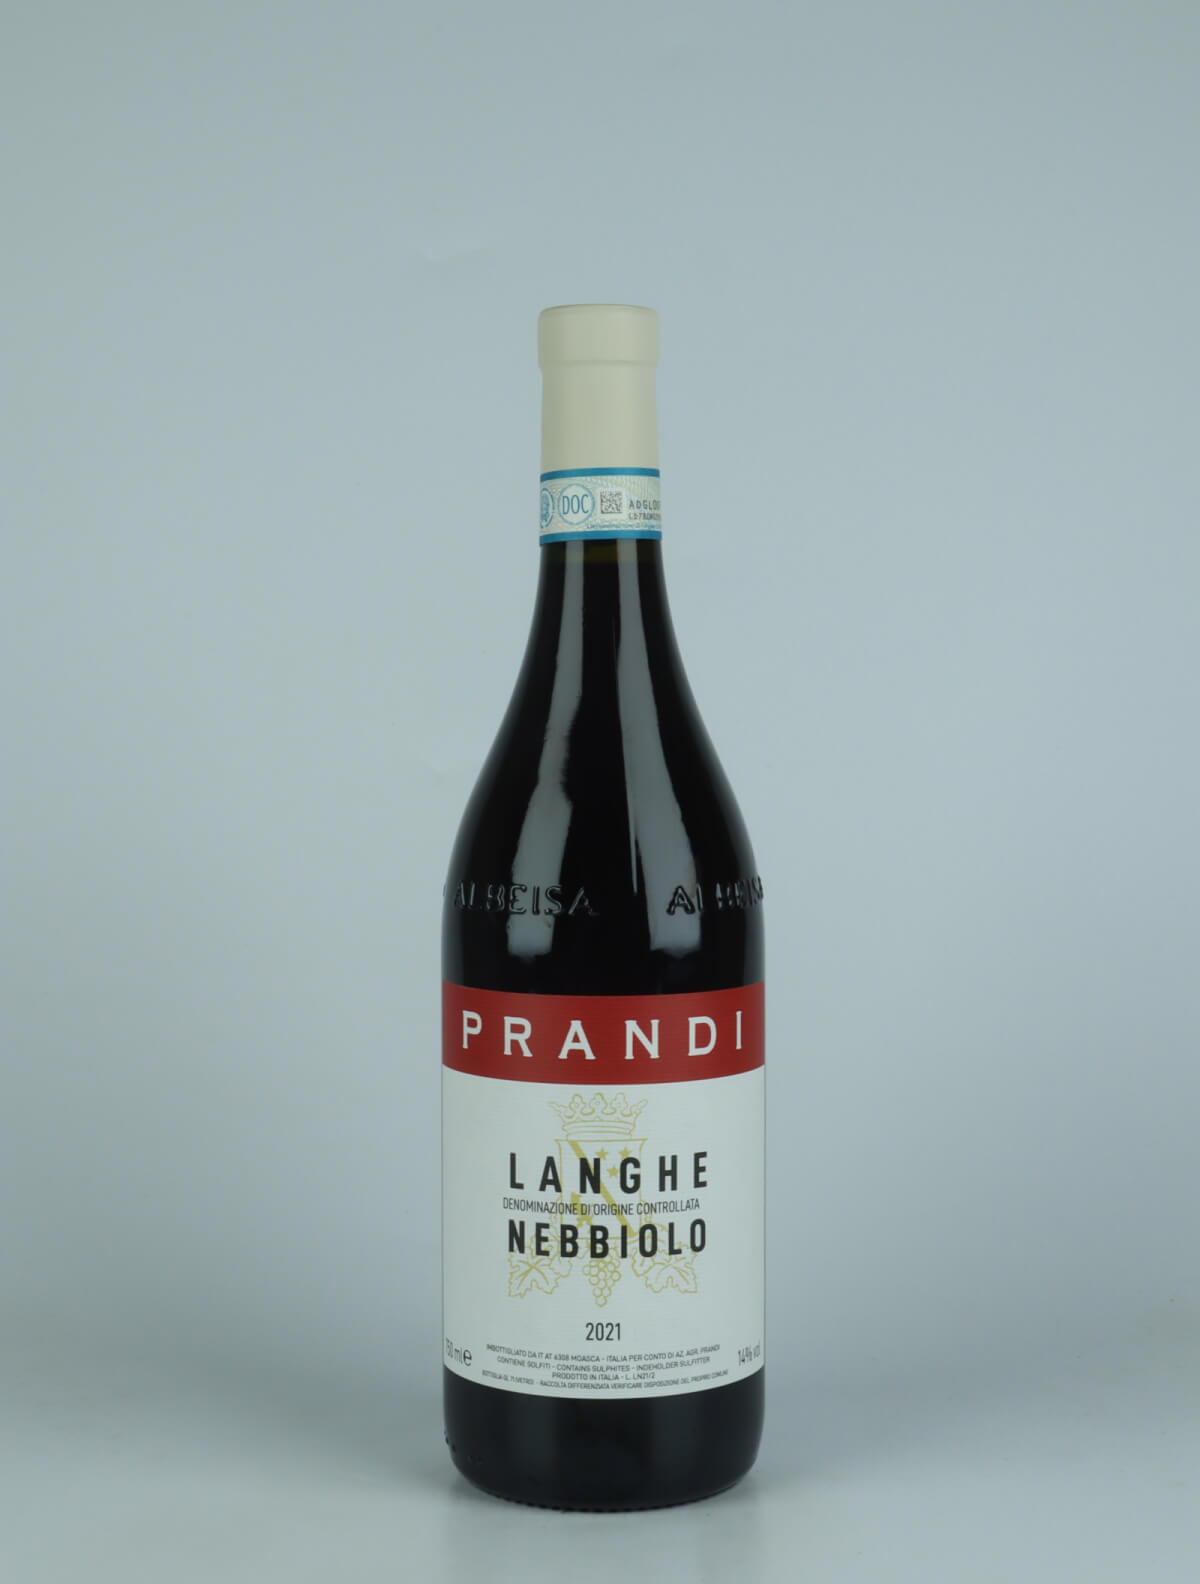 En flaske 2021 Langhe Nebbiolo Rødvin fra Cristina Prandi, Piemonte i Italien